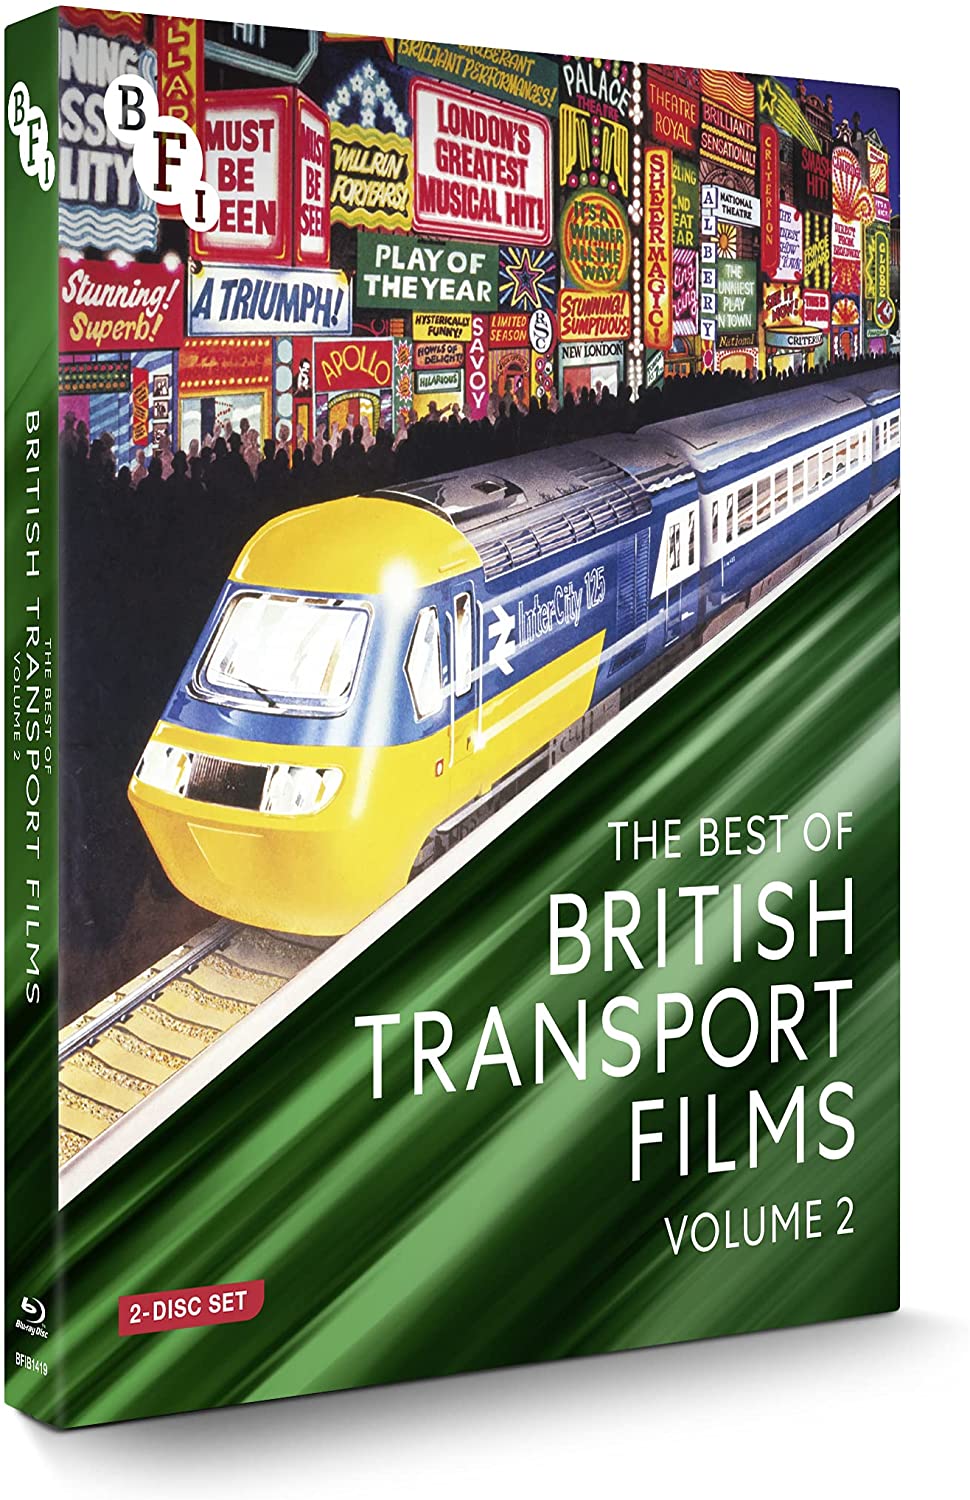 Das Beste aus britischen Transportfilmen Band 2 (2 Discs) [Blu-ray]